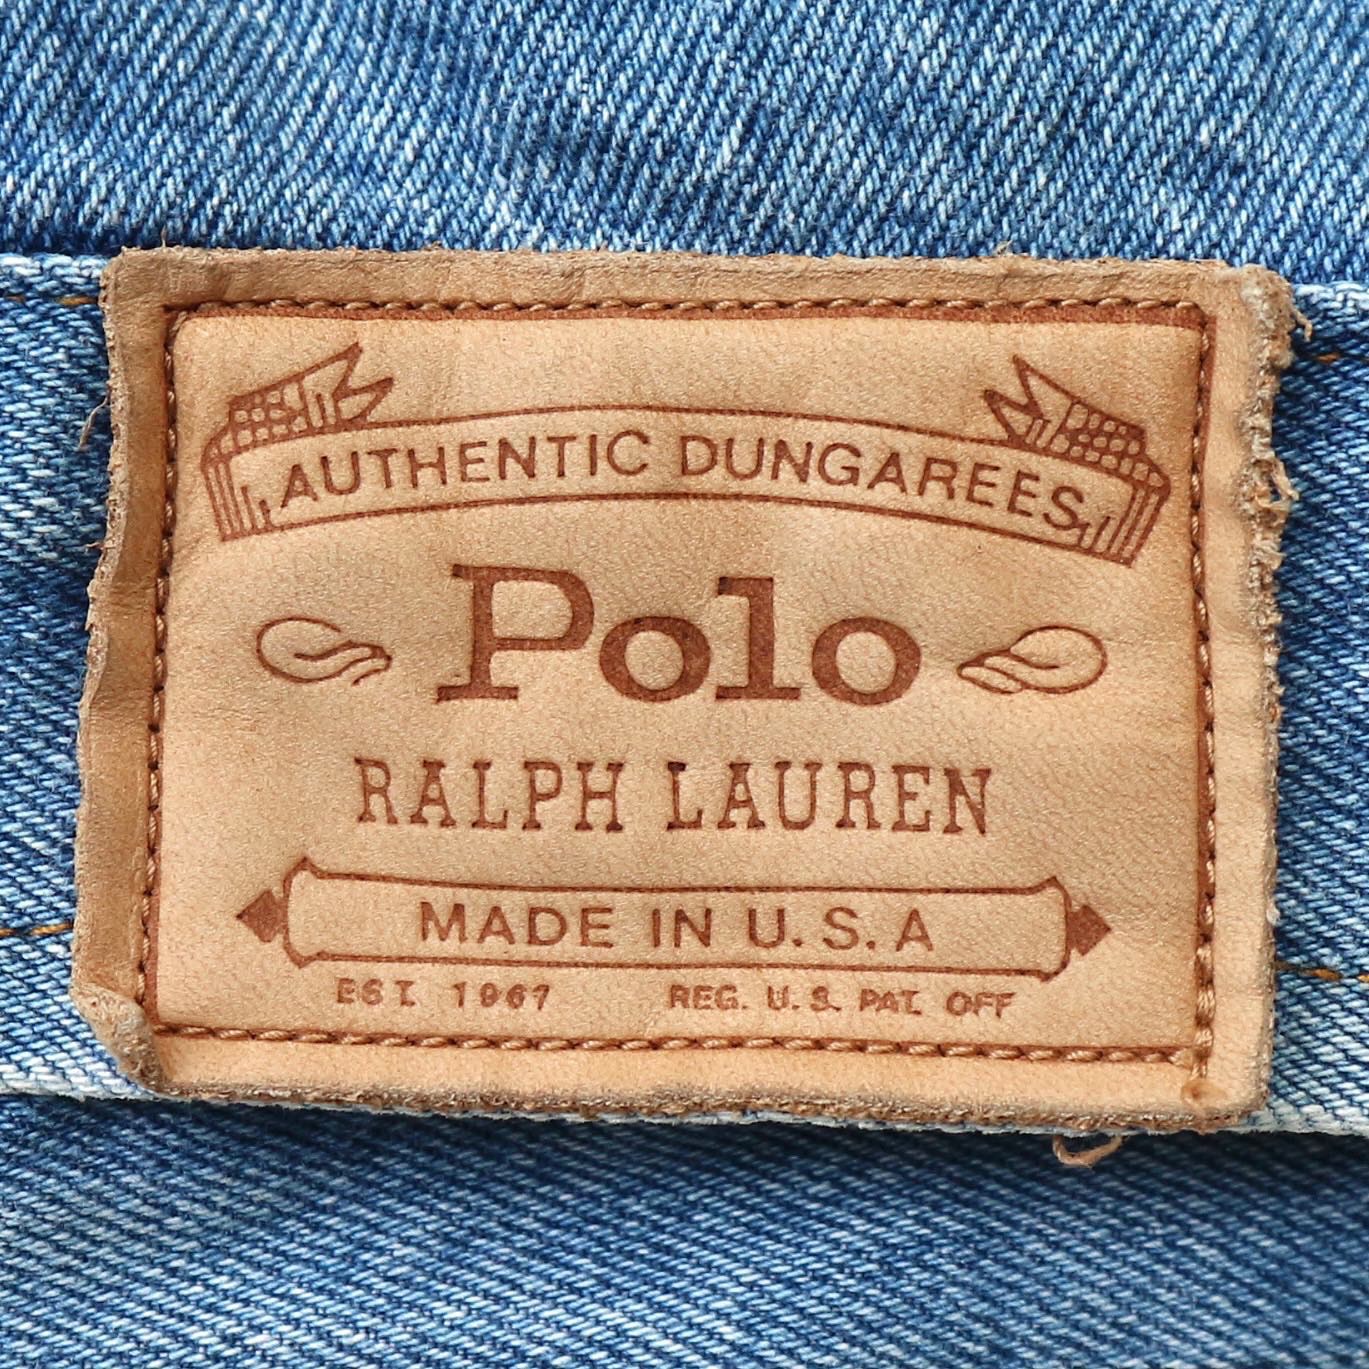 Polo by Ralph Lauren Denim Jacket Size L denimister